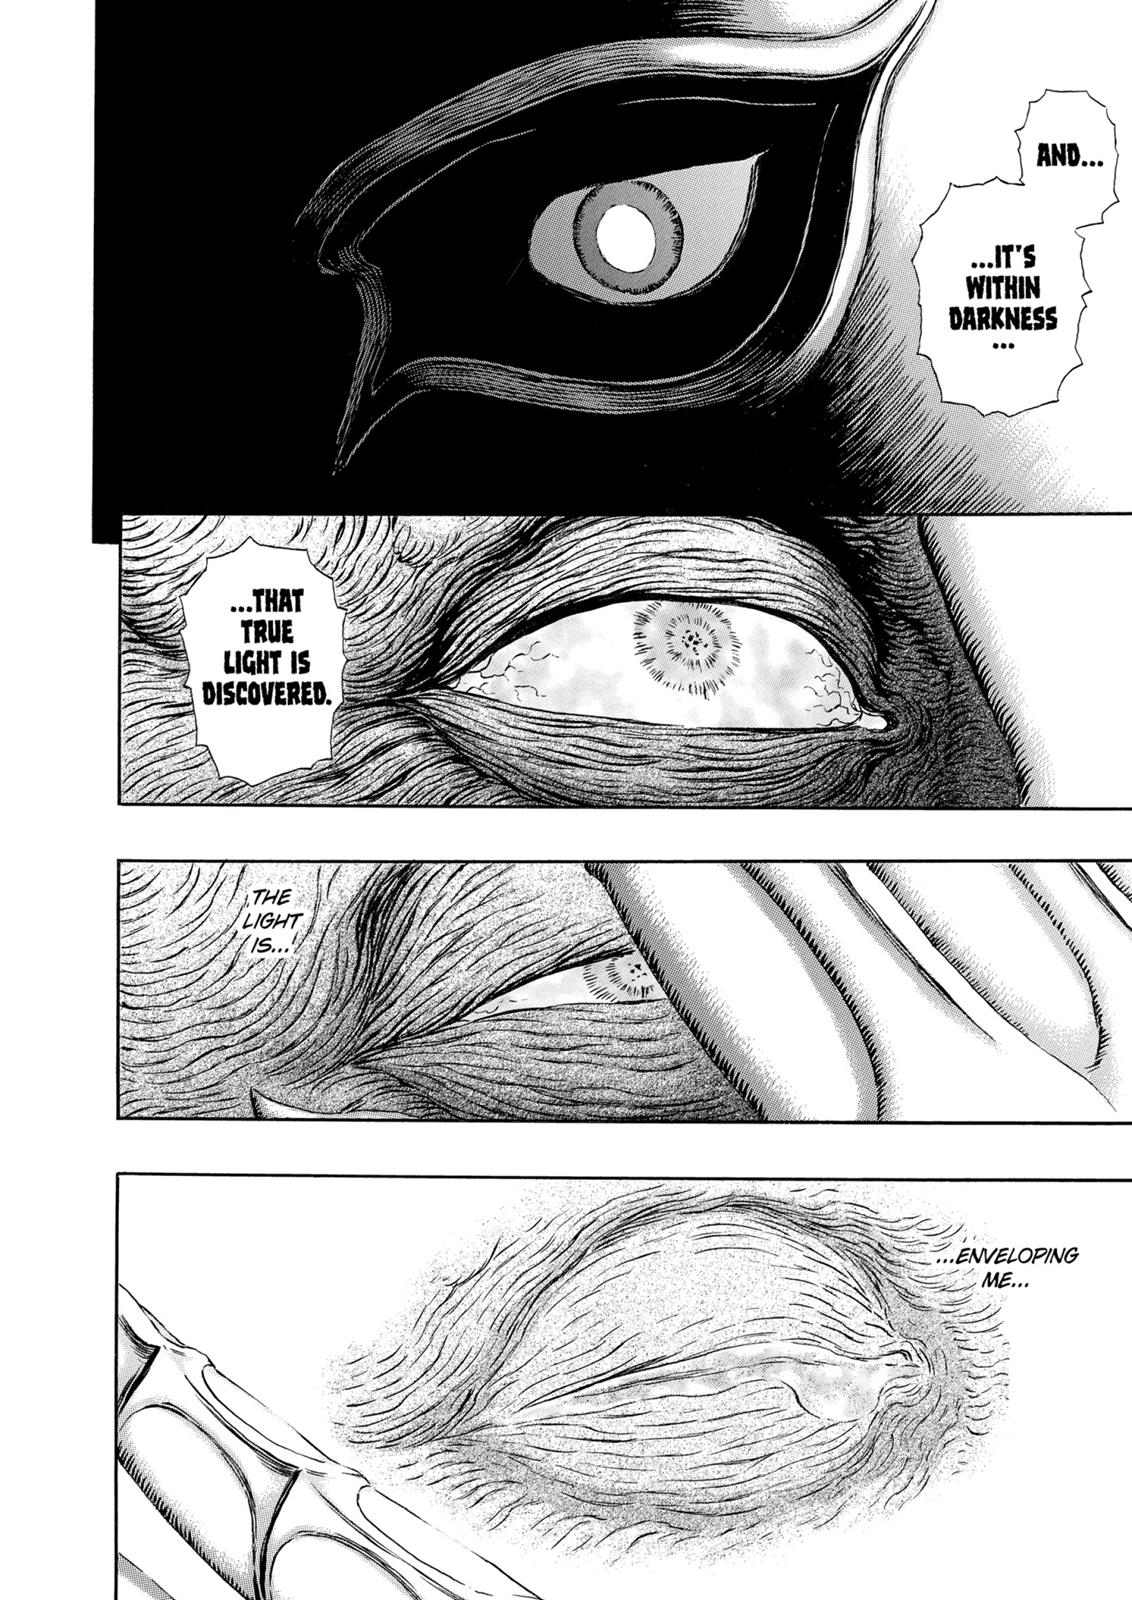 Berserk Manga Chapter 303 image 14